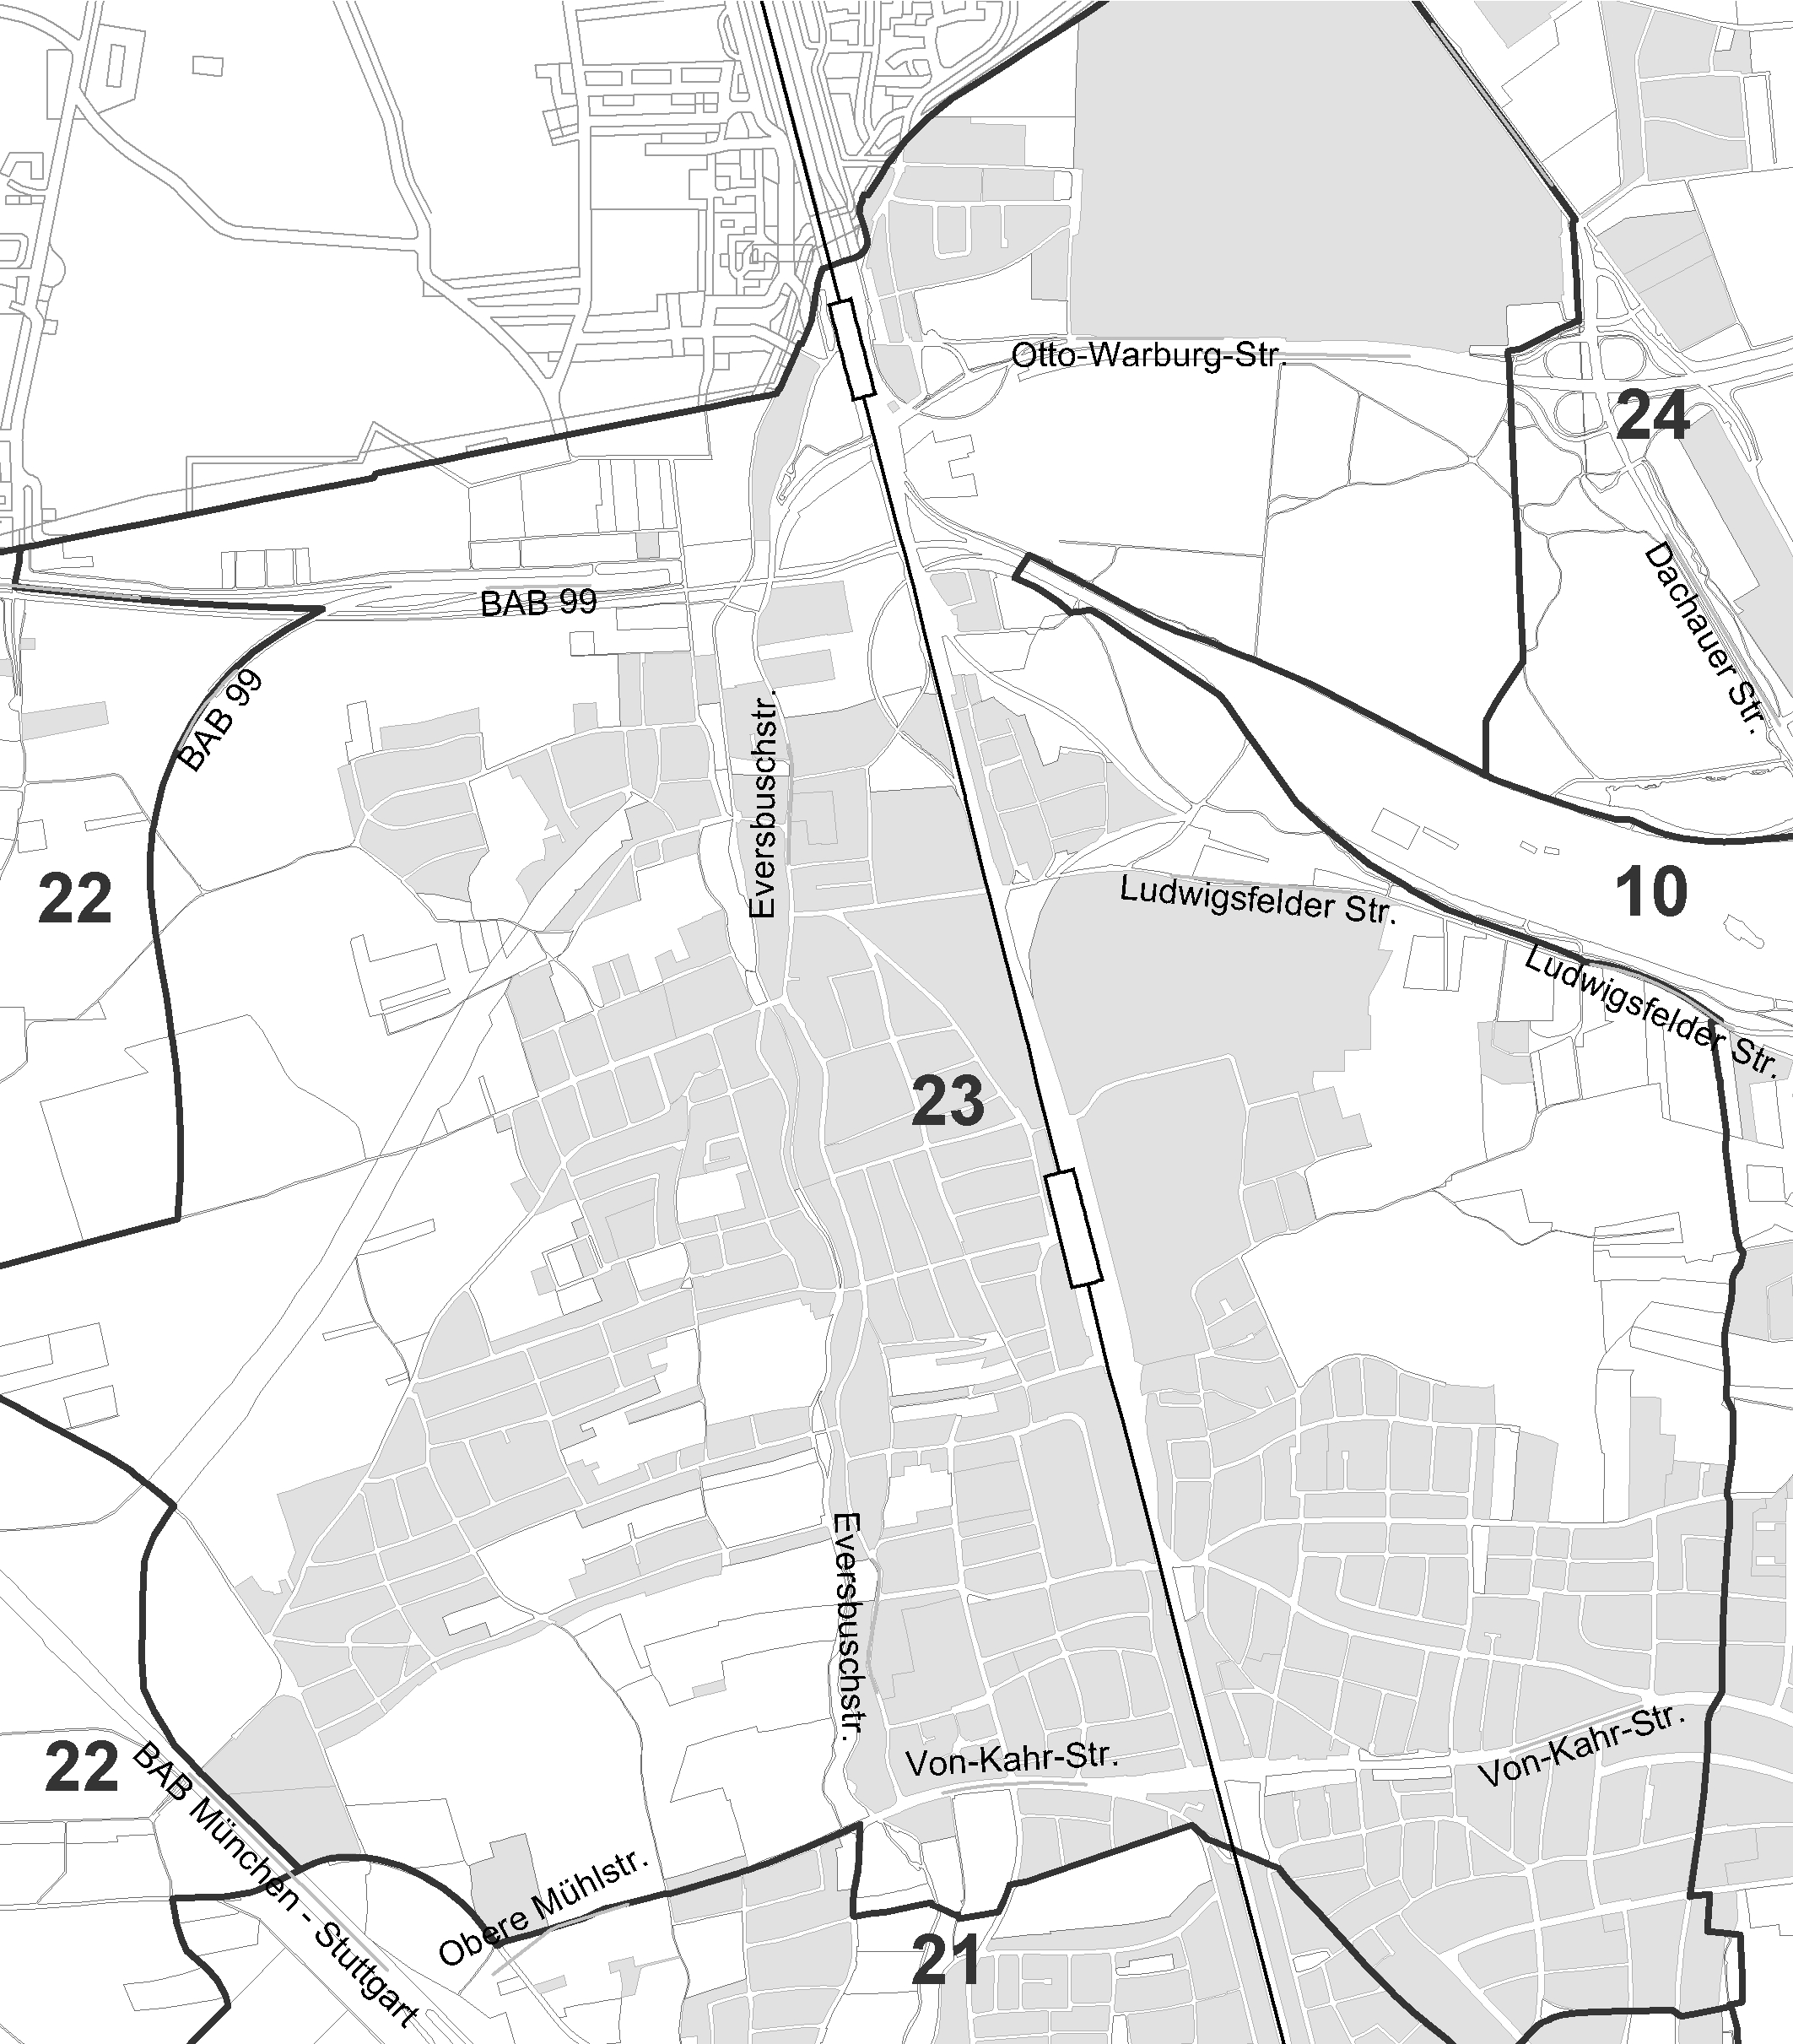 Anlage 2 Allach Untermenzing Flächennutzungsplanänderung für den Bereich IV/30 Oertelplatz, Bahnlinie München-Ingolstadt (westlich), Hintermeierstraße (nördlich), Lautenschlägerstraße (östlich),